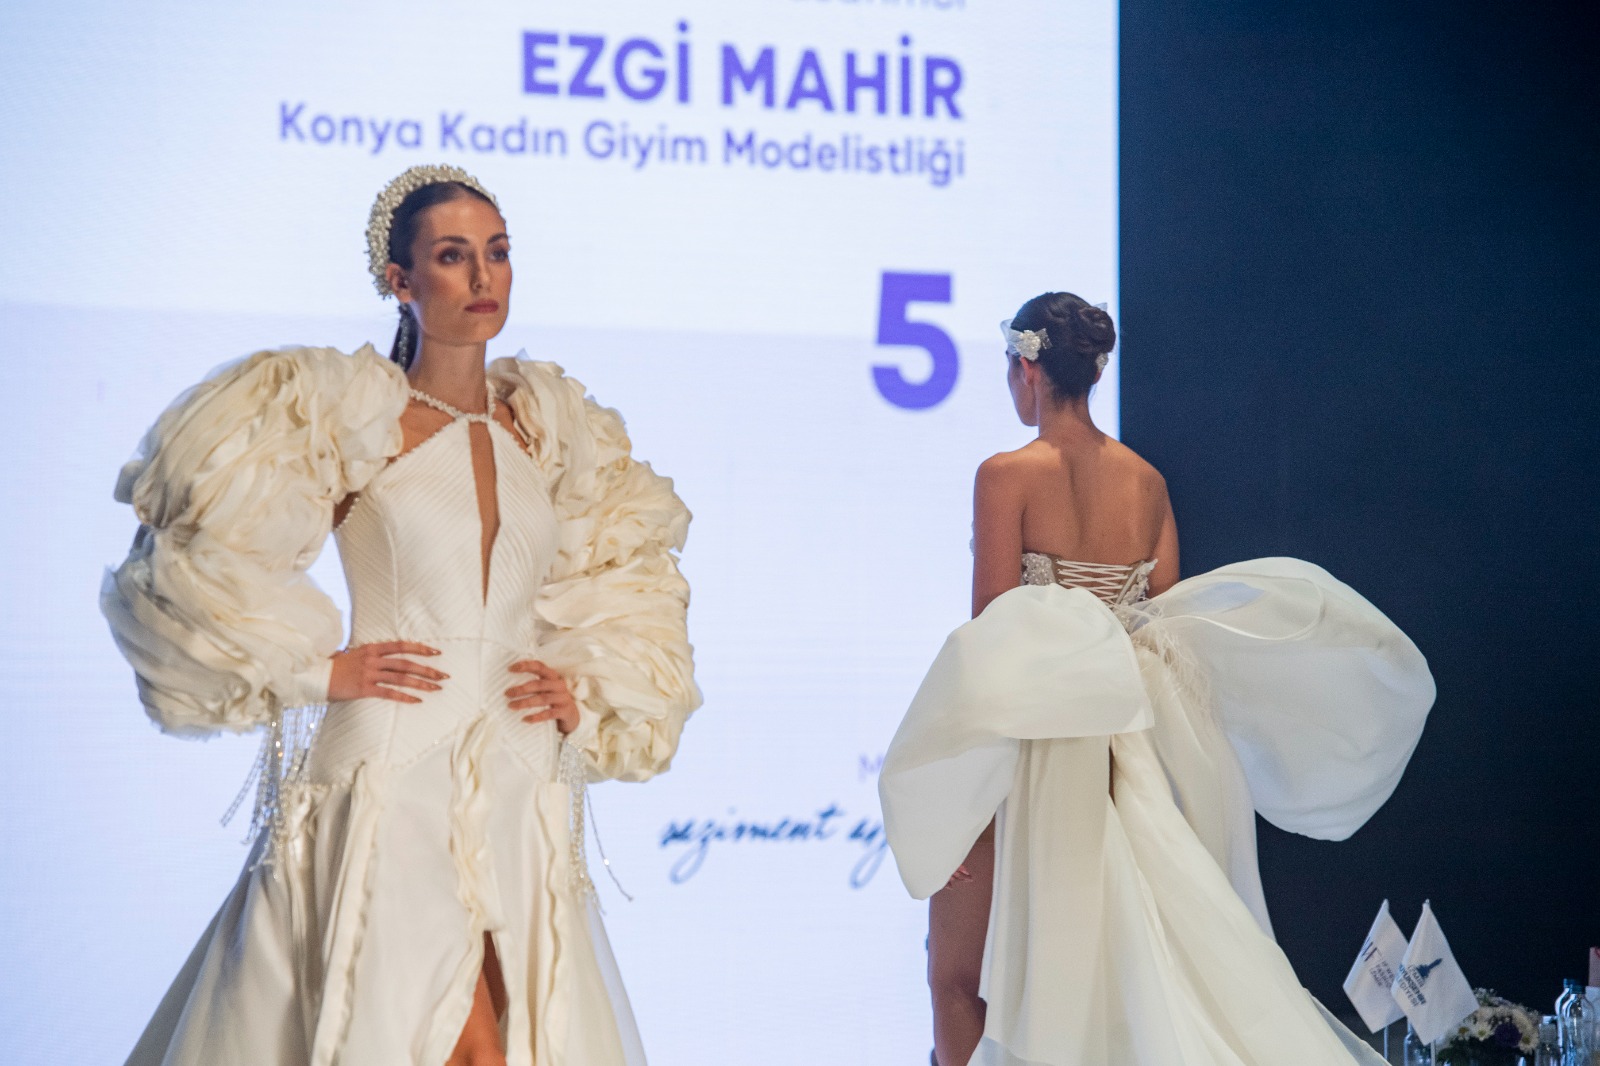 Başkan Tunç Soyer 15. IF Wedding Fashion İzmir’in açılışında konuştu: “Üretim ve ihracatımıza çok önemli katkılar sunacak”